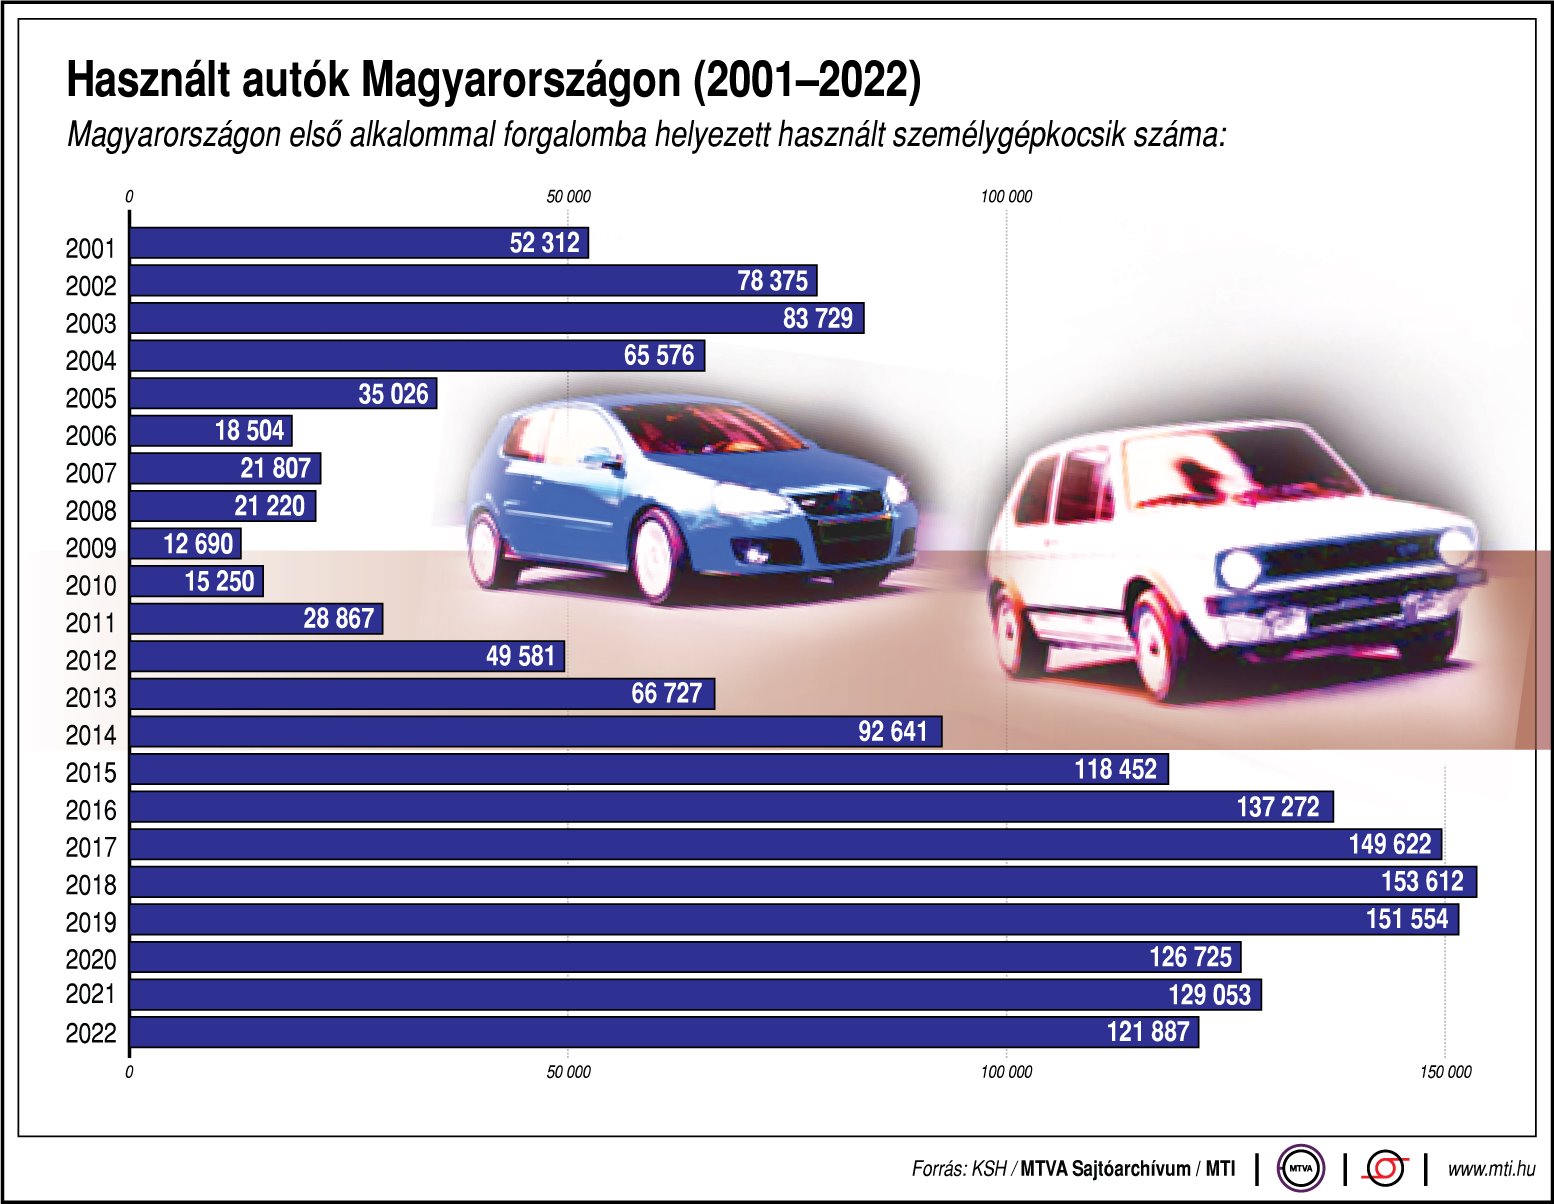 A Magyarországon első alkalommal forgalomba helyezett használt személygépkocsik száma 2001 és 2022 között (kép forrása: MTI)